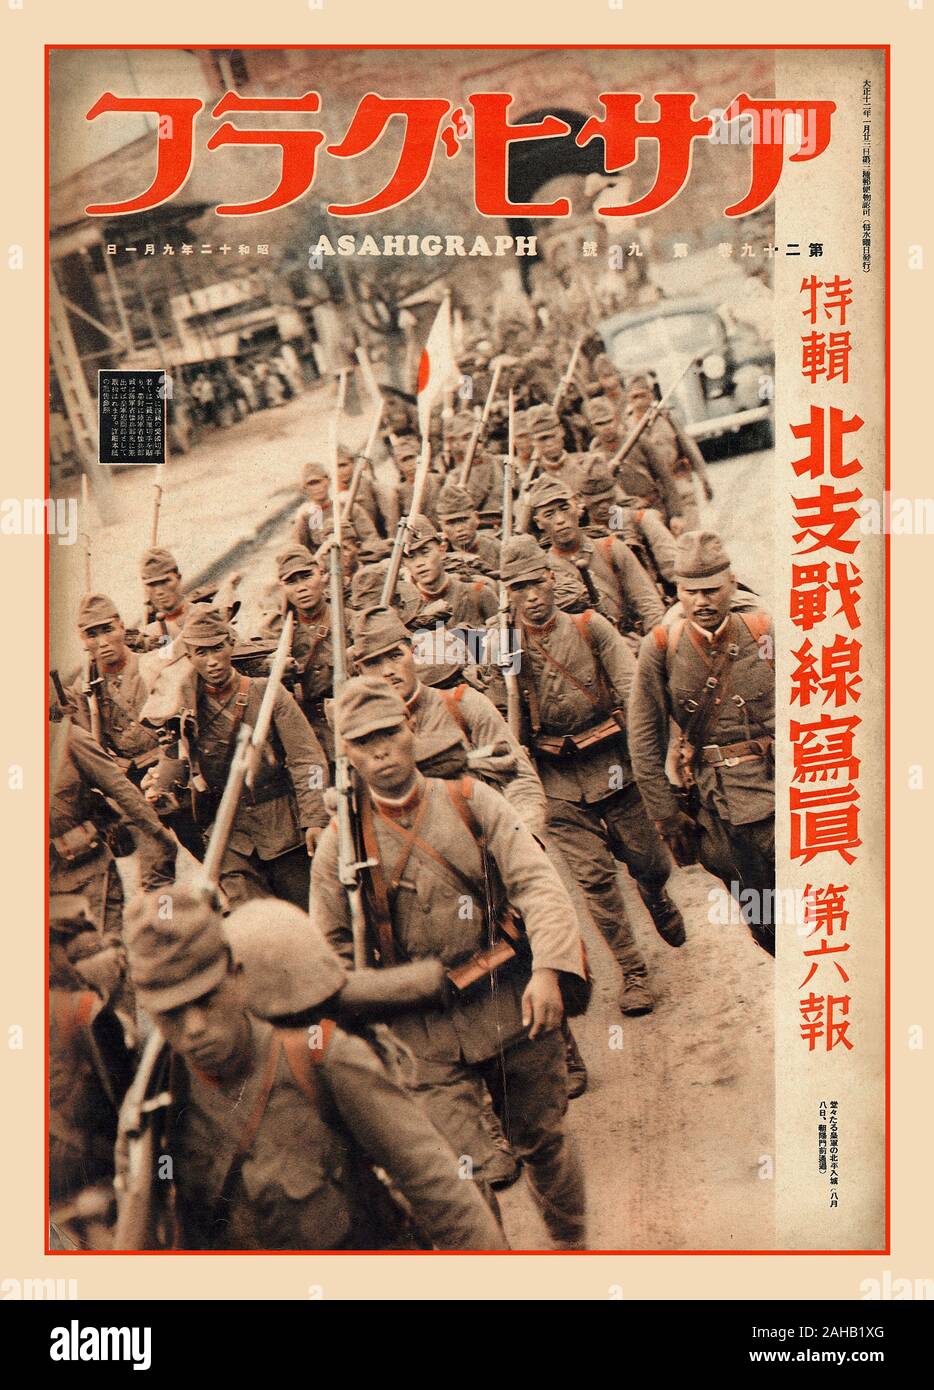 ASAHIGRAPH Vintage Photo page Japanische Truppen marschieren in Nordchina 1 Sep 1937 Ausgabe der japanischen Publikation Asahigraph, die japanische Truppen zeigt, die in Peking Nordchina als Vorbereitung auf den Zweiten Weltkrieg marschieren Stockfoto